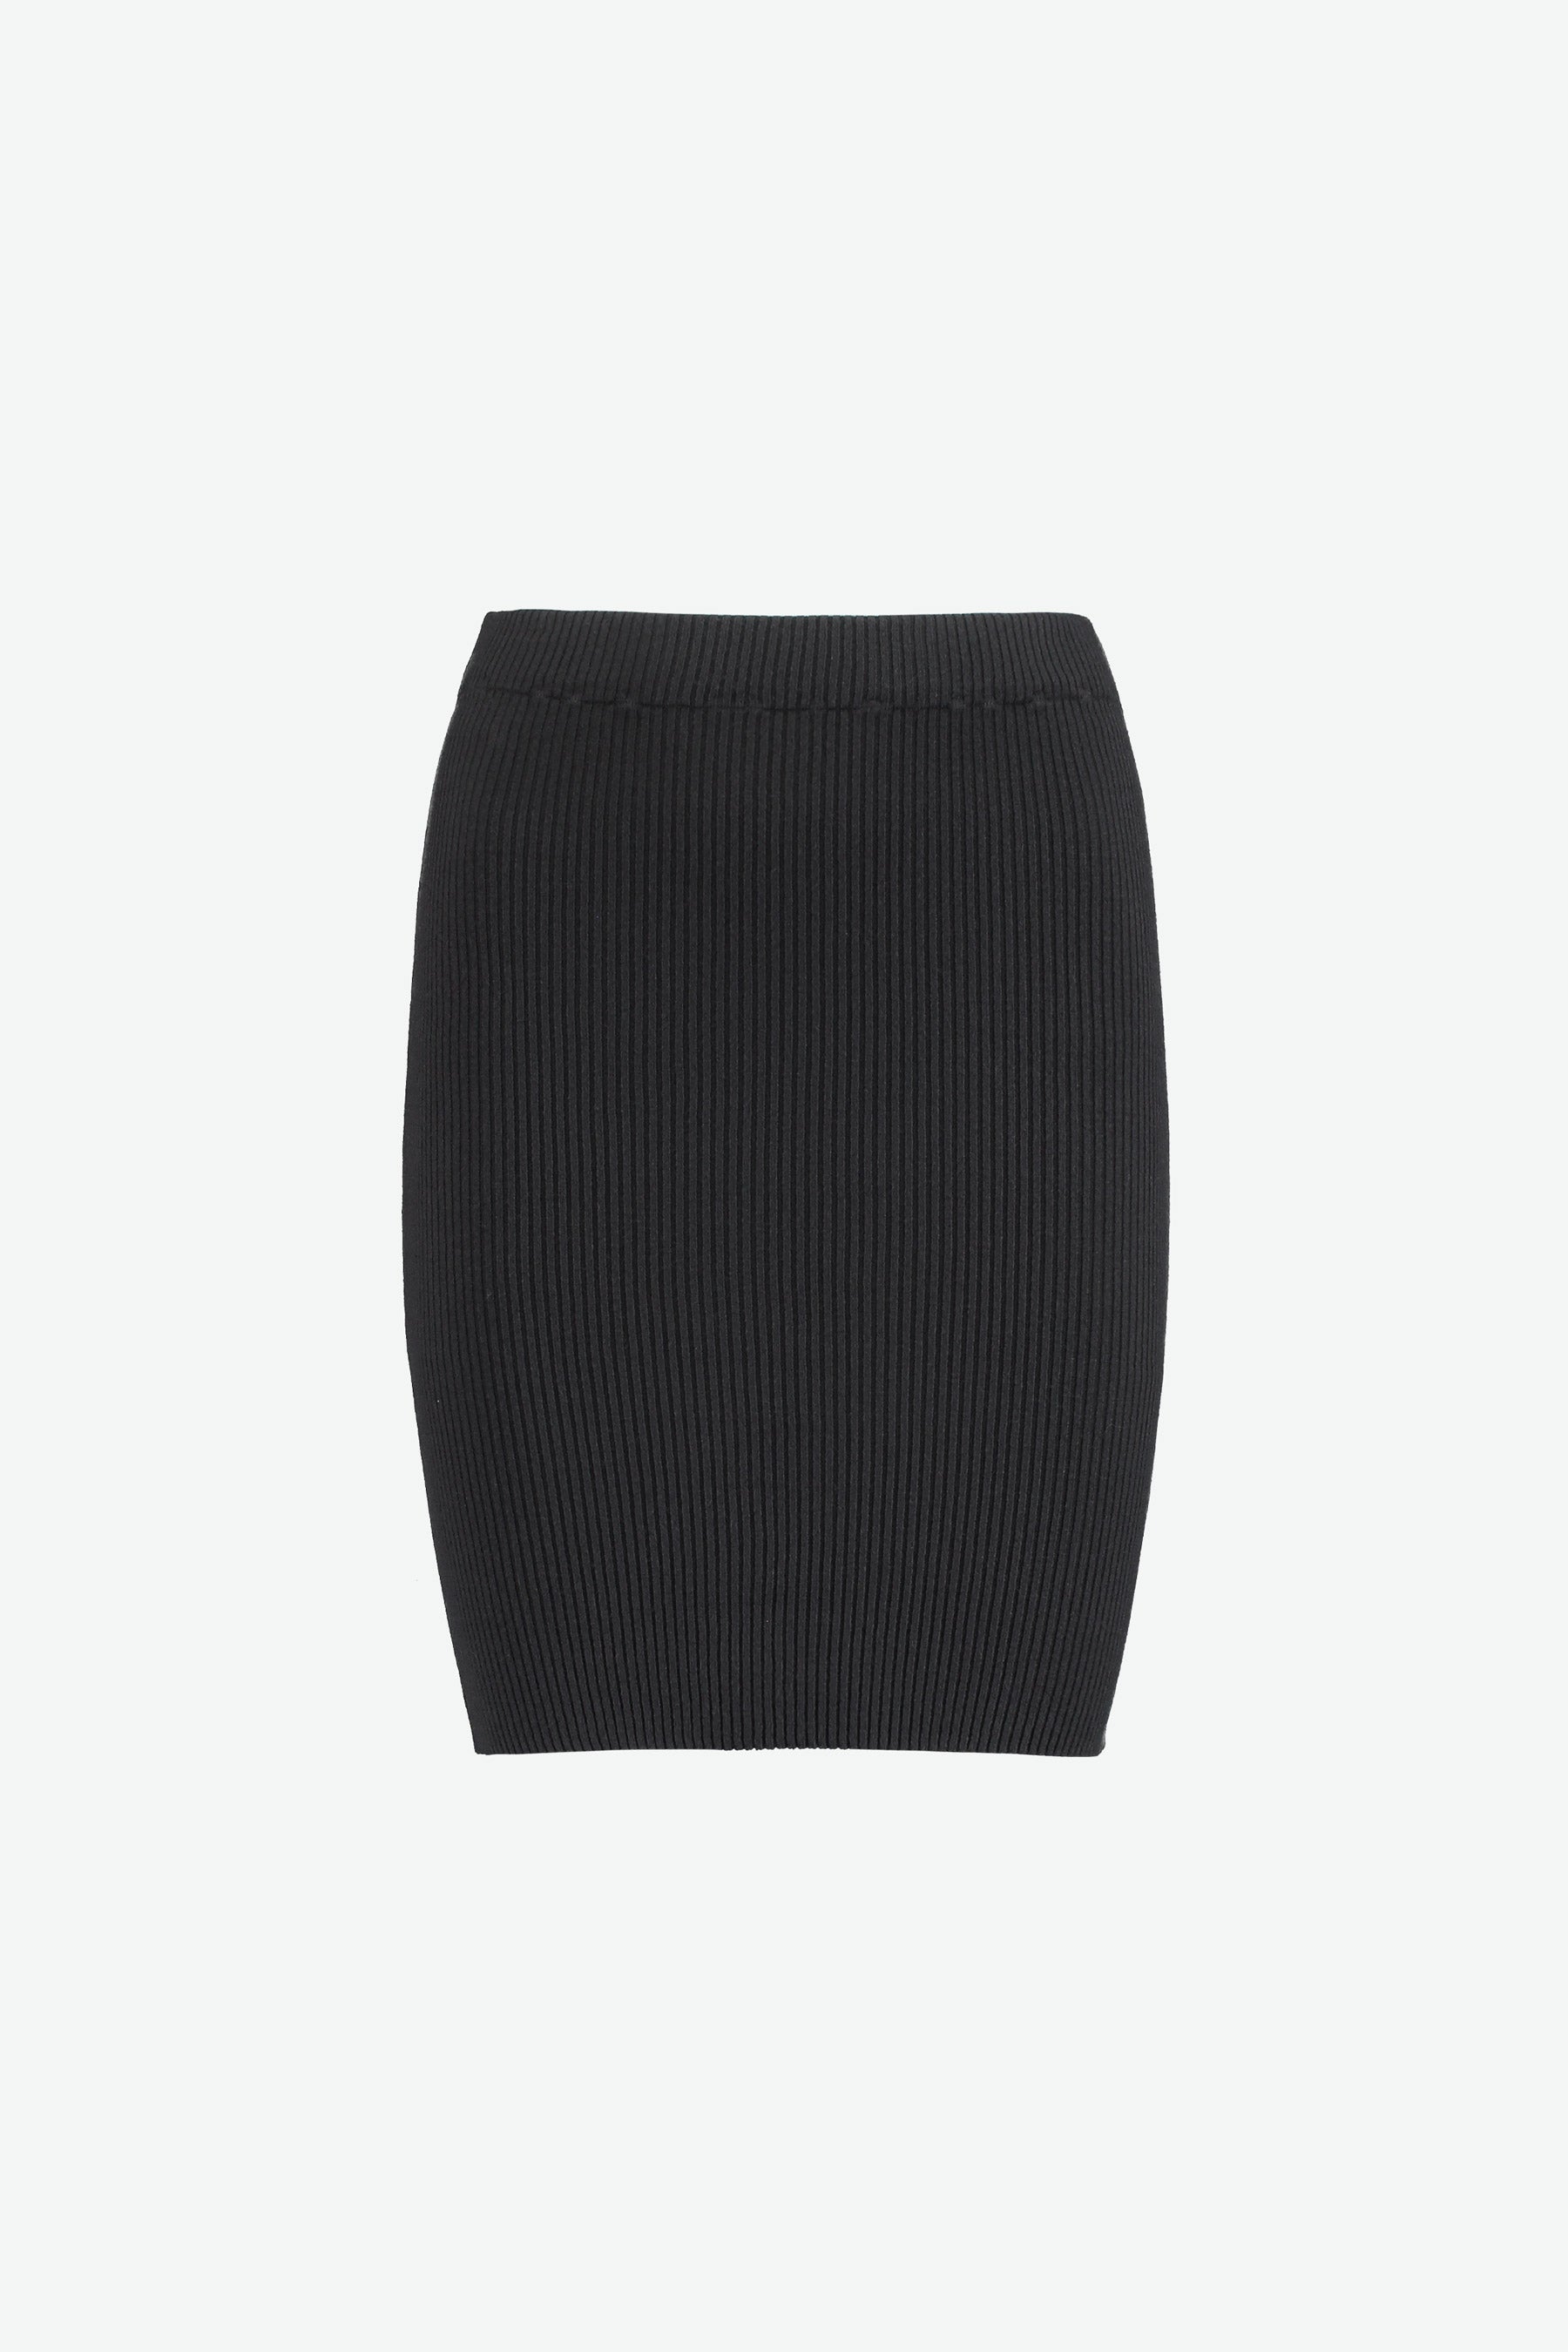 Isla Mini Skirt in Ebano Black